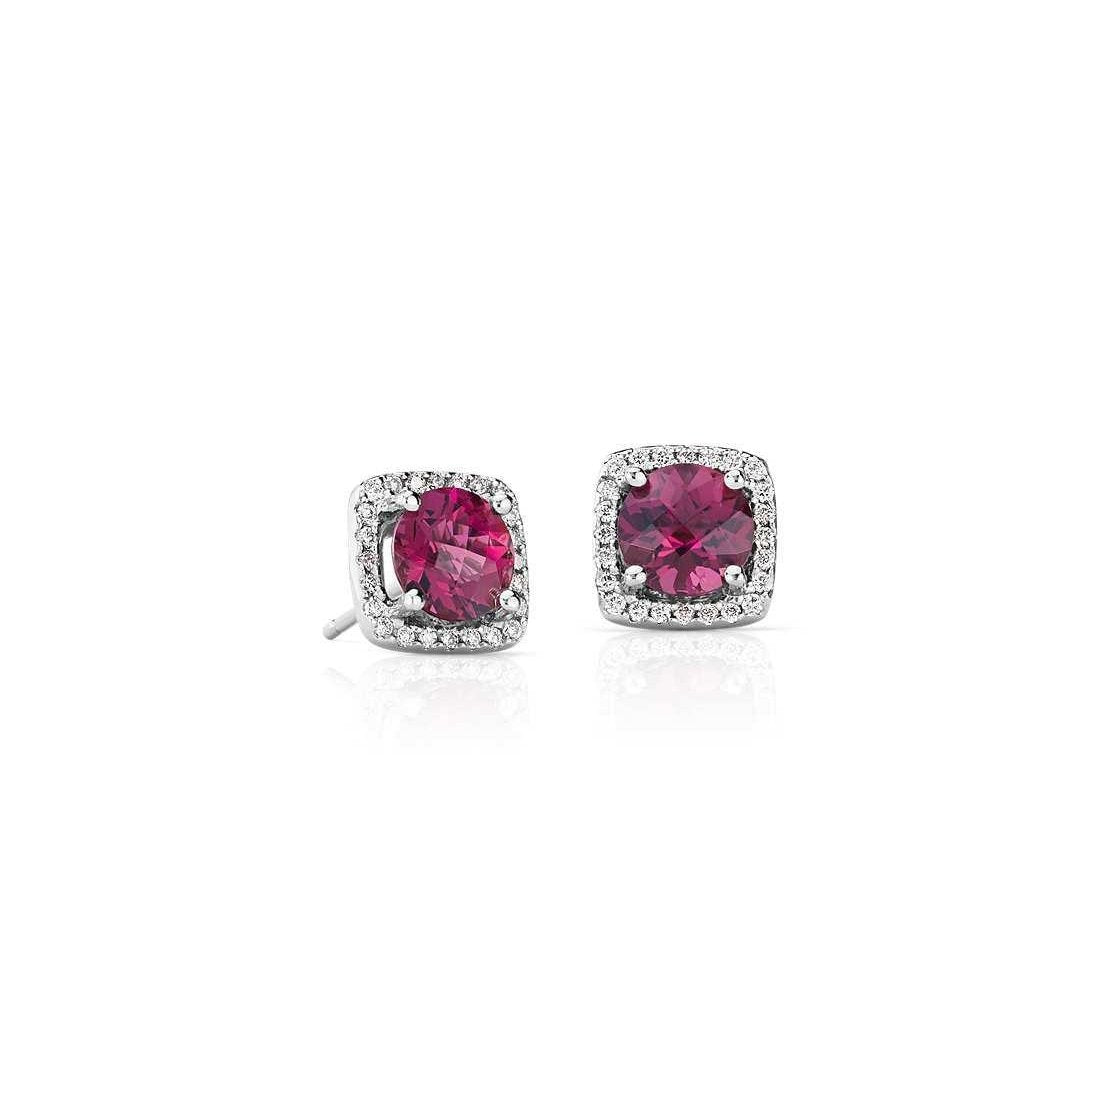 Boucles d'Oreilles Femme Tourmaline Rose 8 Carats Et Diamants Or Blanc 14K - HarryChadEnt.FR